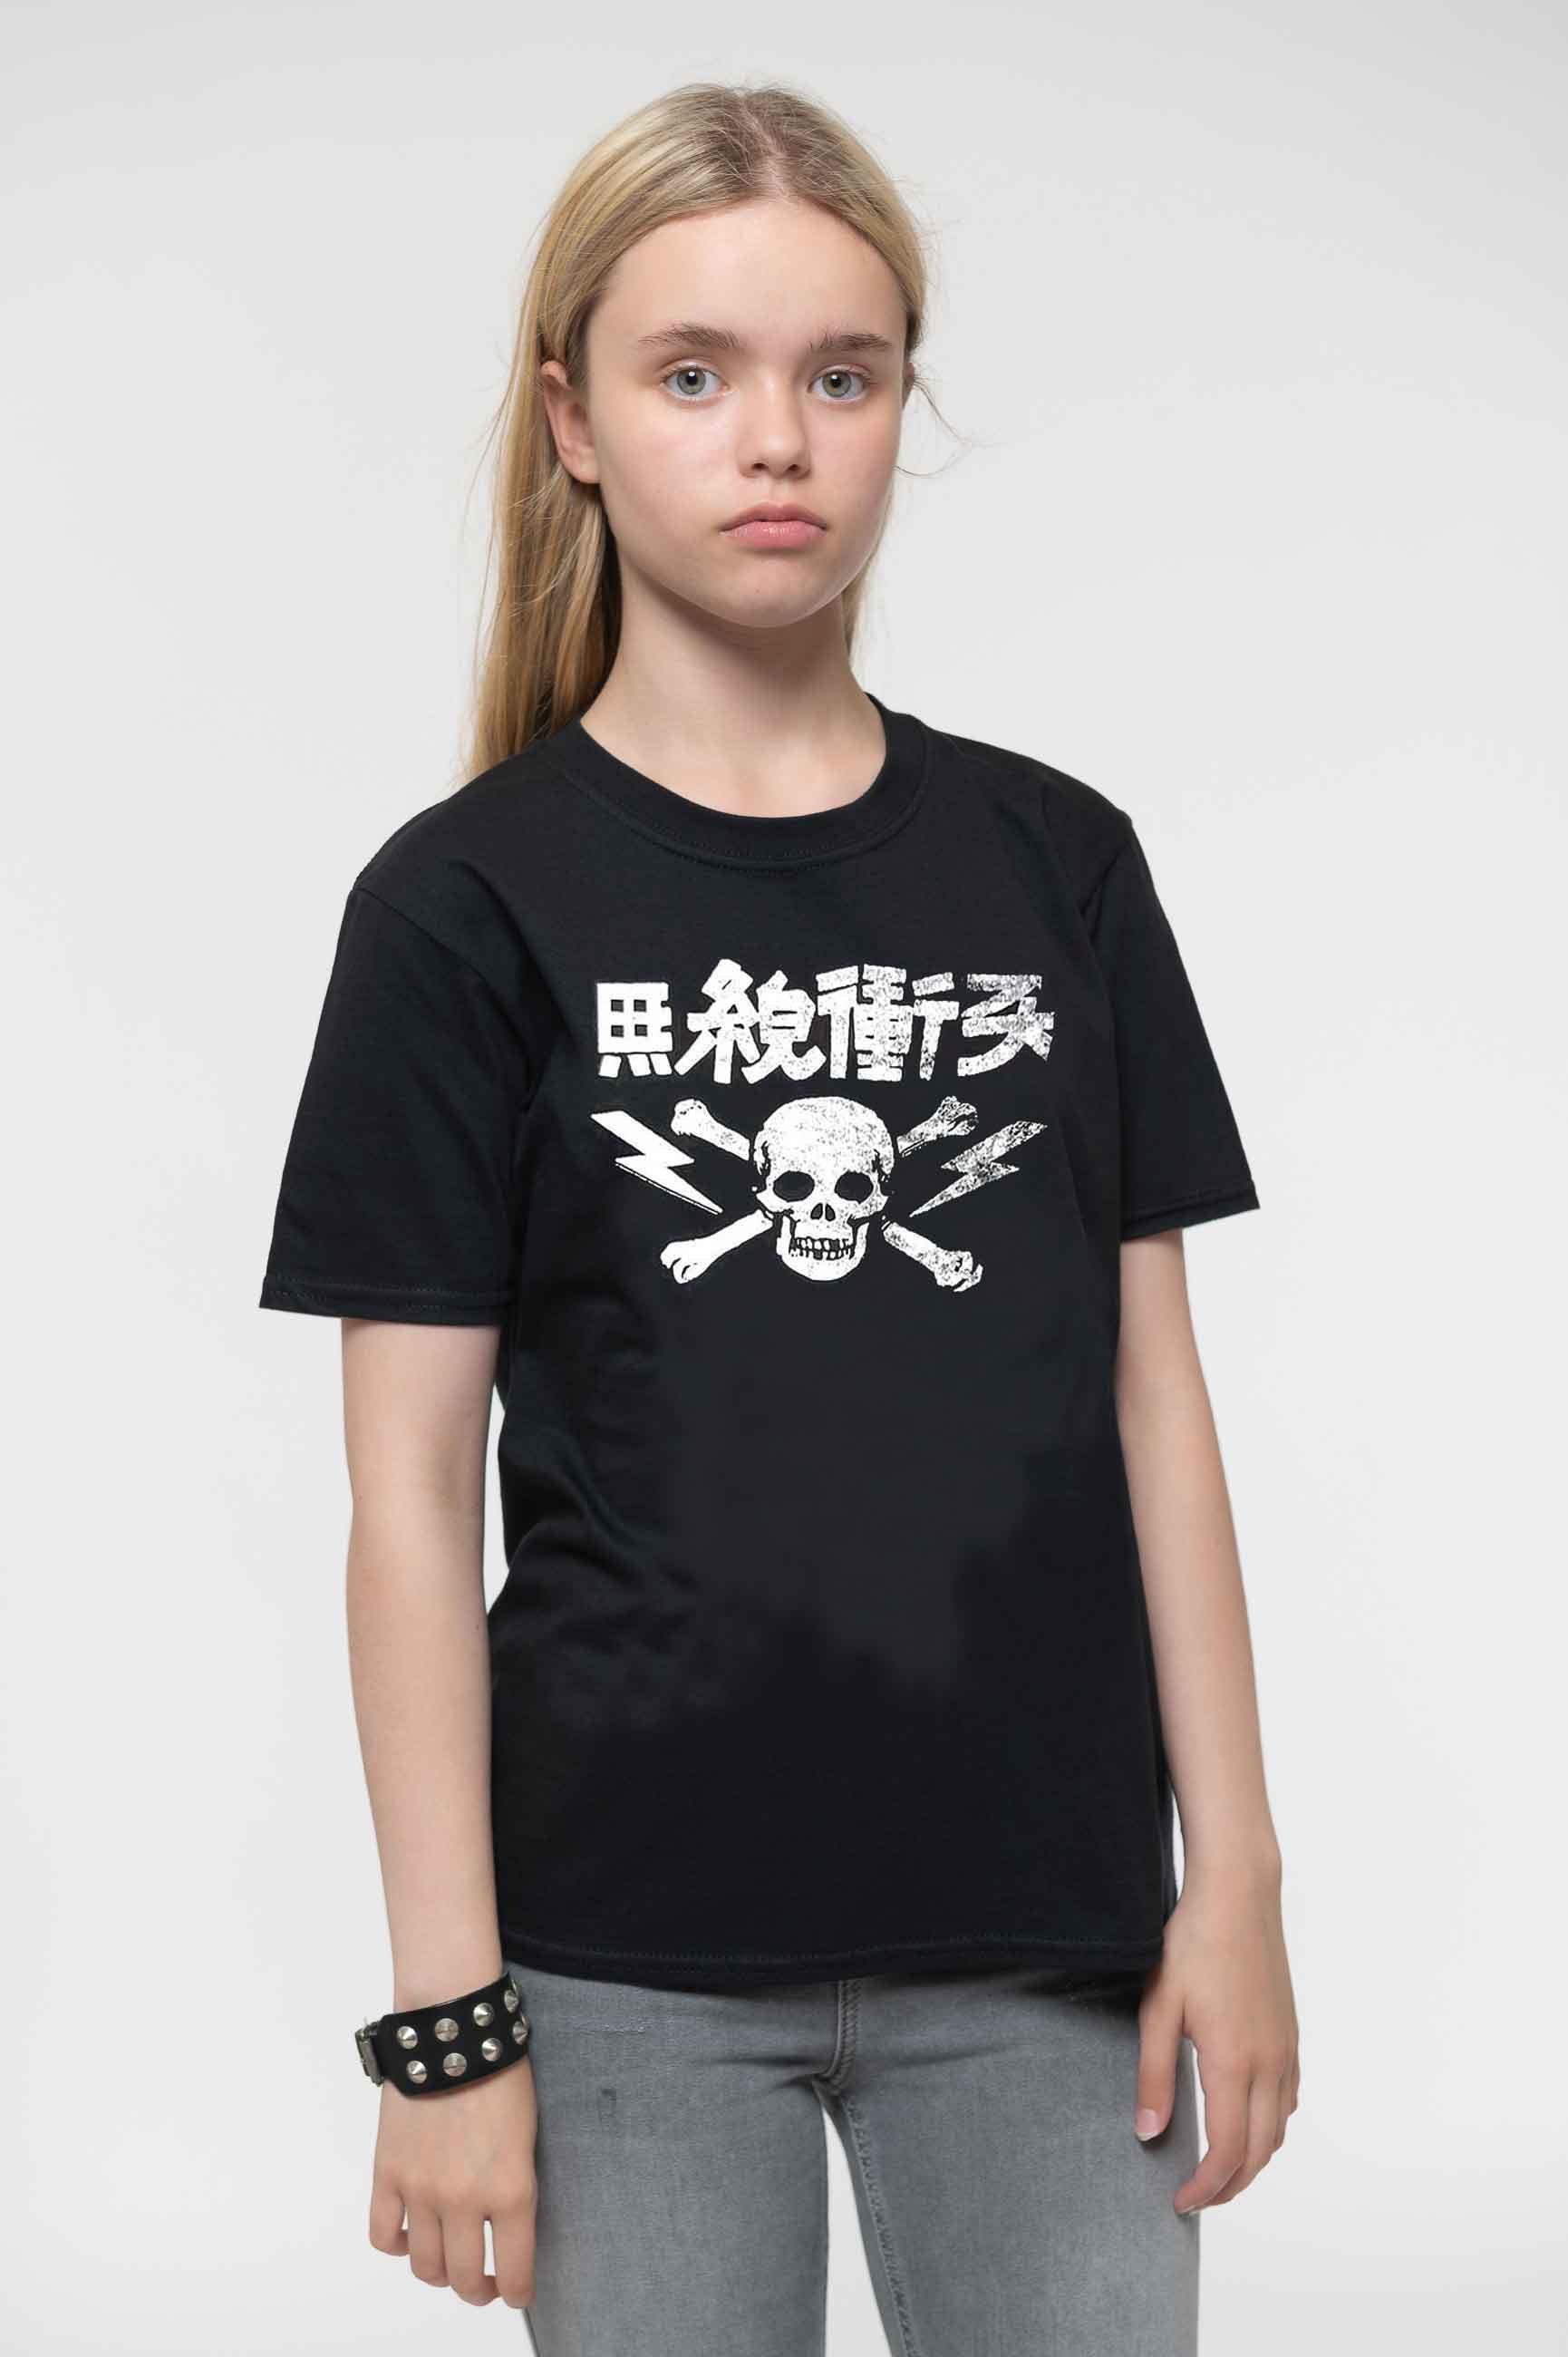 Japan Text T Shirt